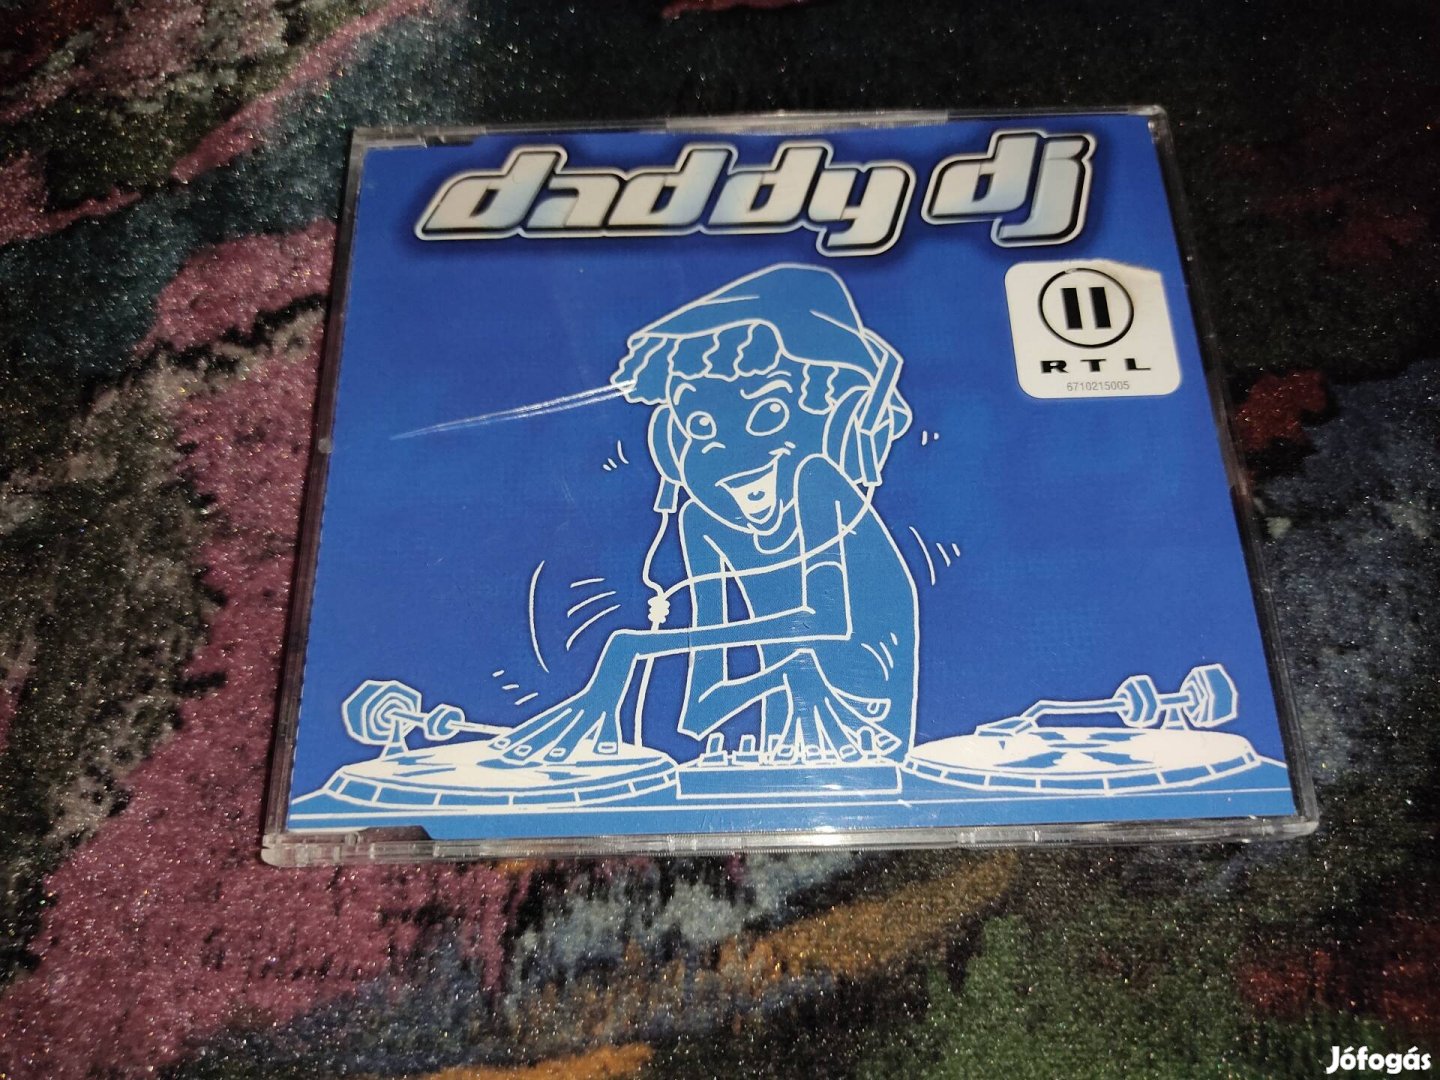 Daddy DJ - Daddy DJ Maxi CD (2000)